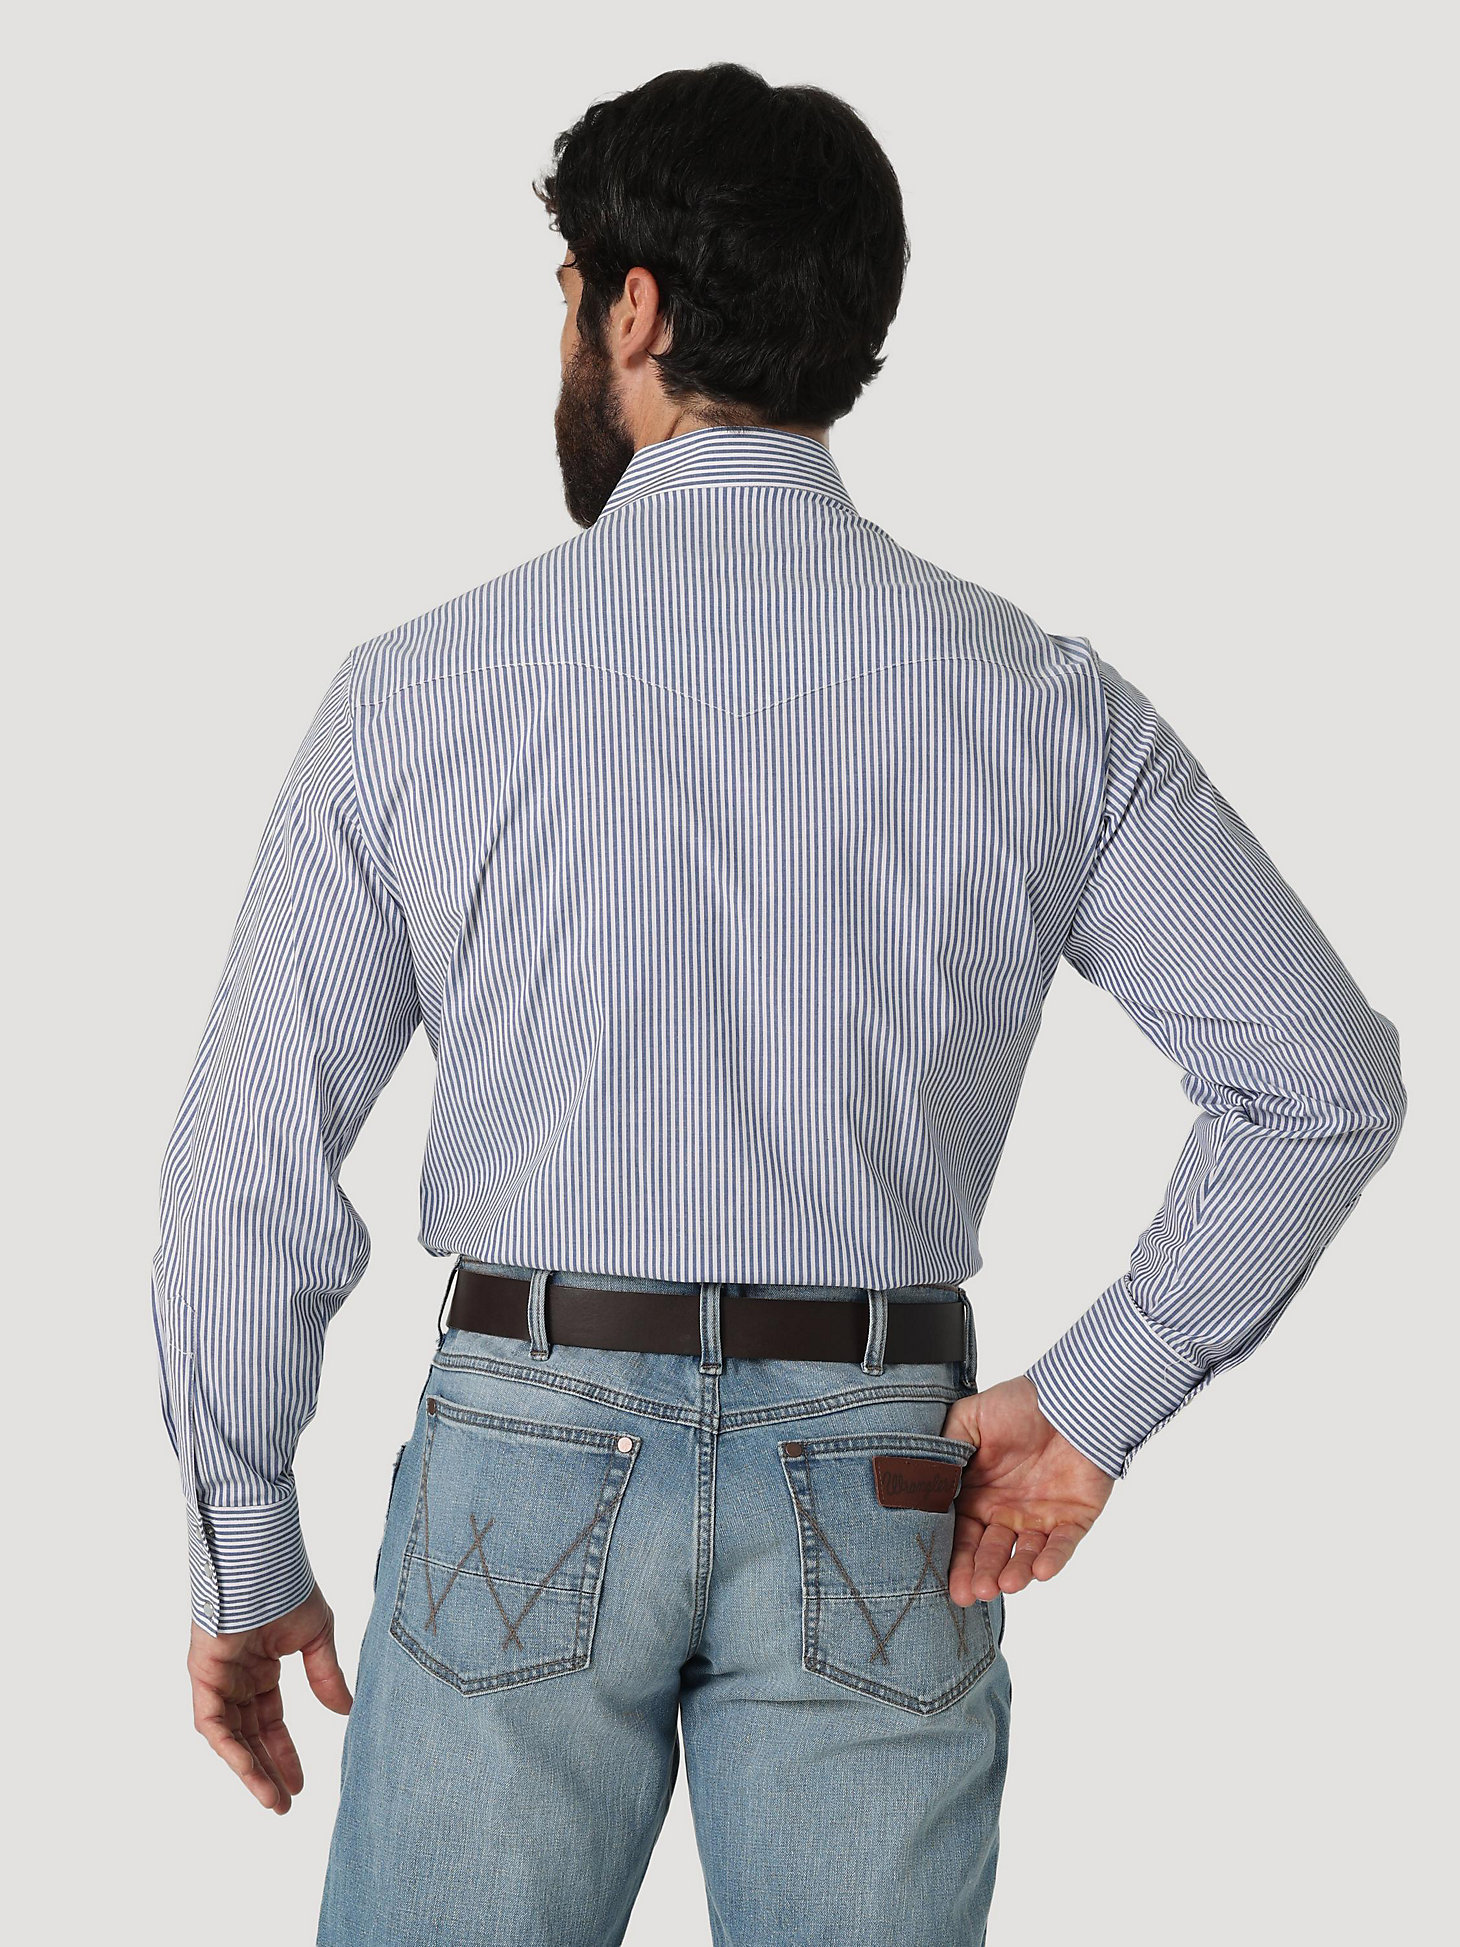 Men's Wrinkle Resist Long Sleeve Western Snap Striped Shirt in Inlet alternative view 1